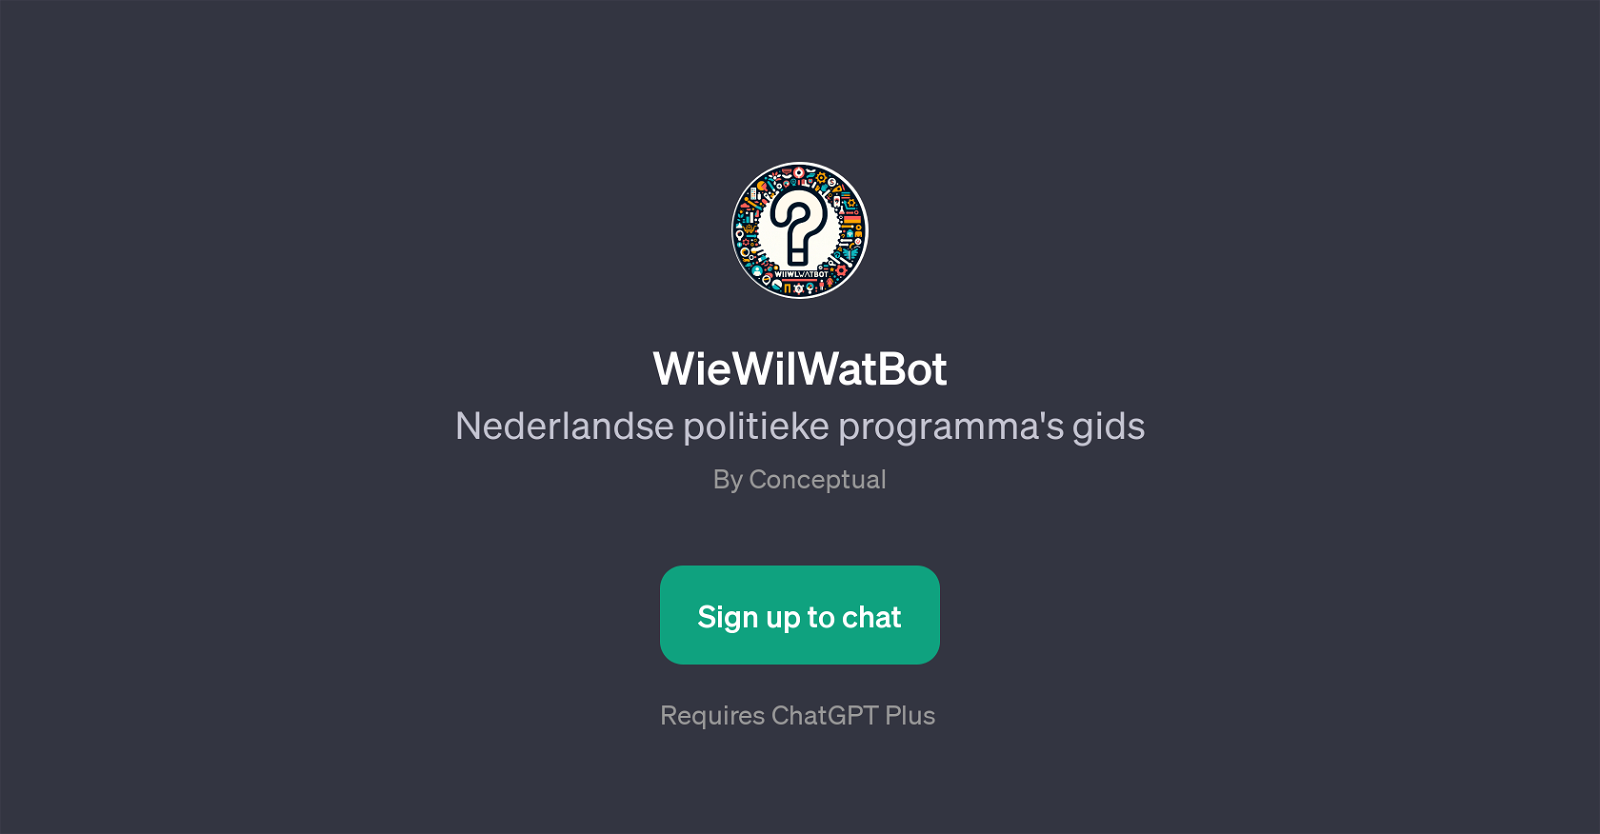 WieWilWatBot website